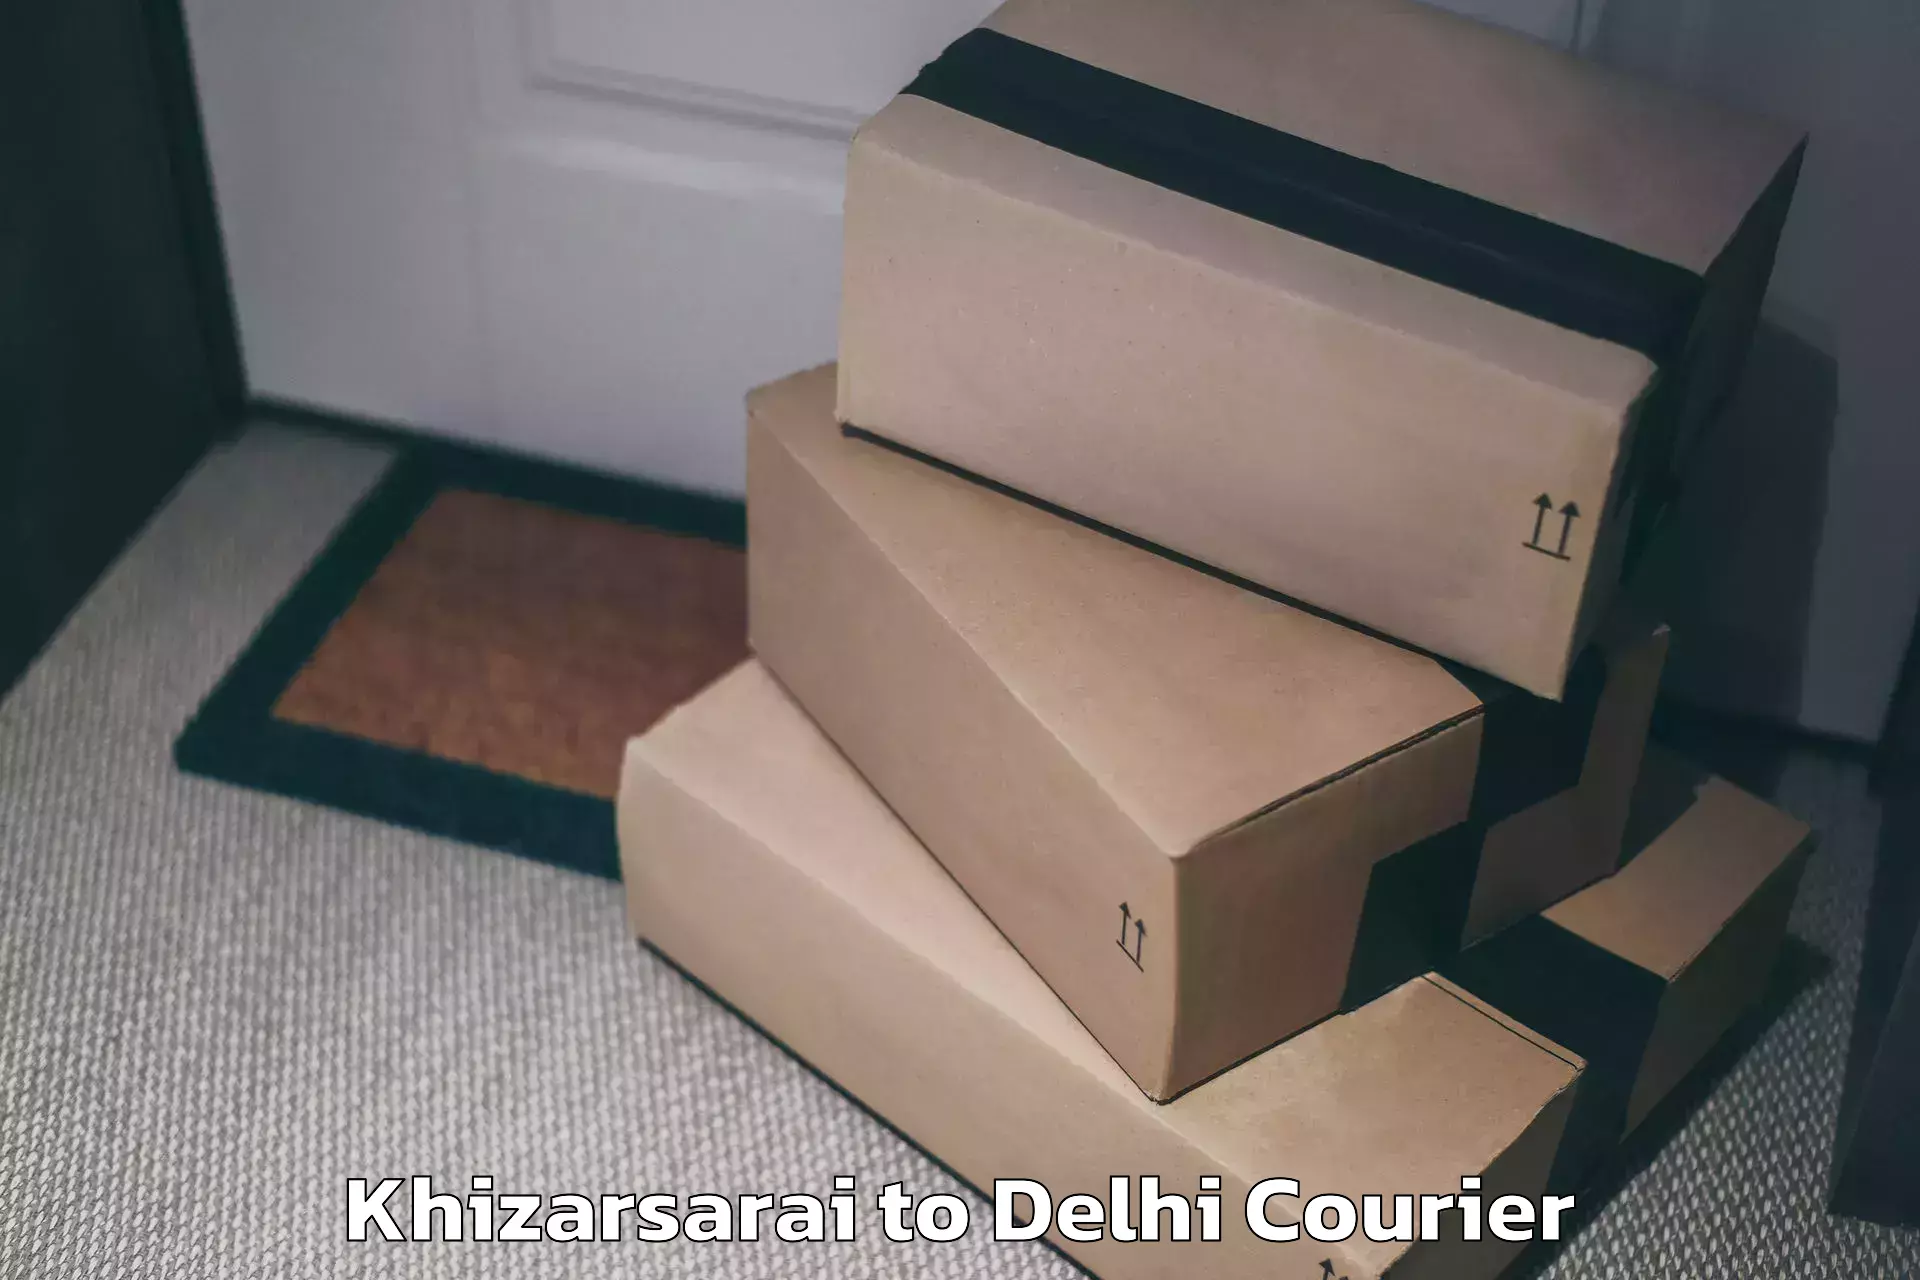 High-quality baggage shipment in Khizarsarai to East Delhi